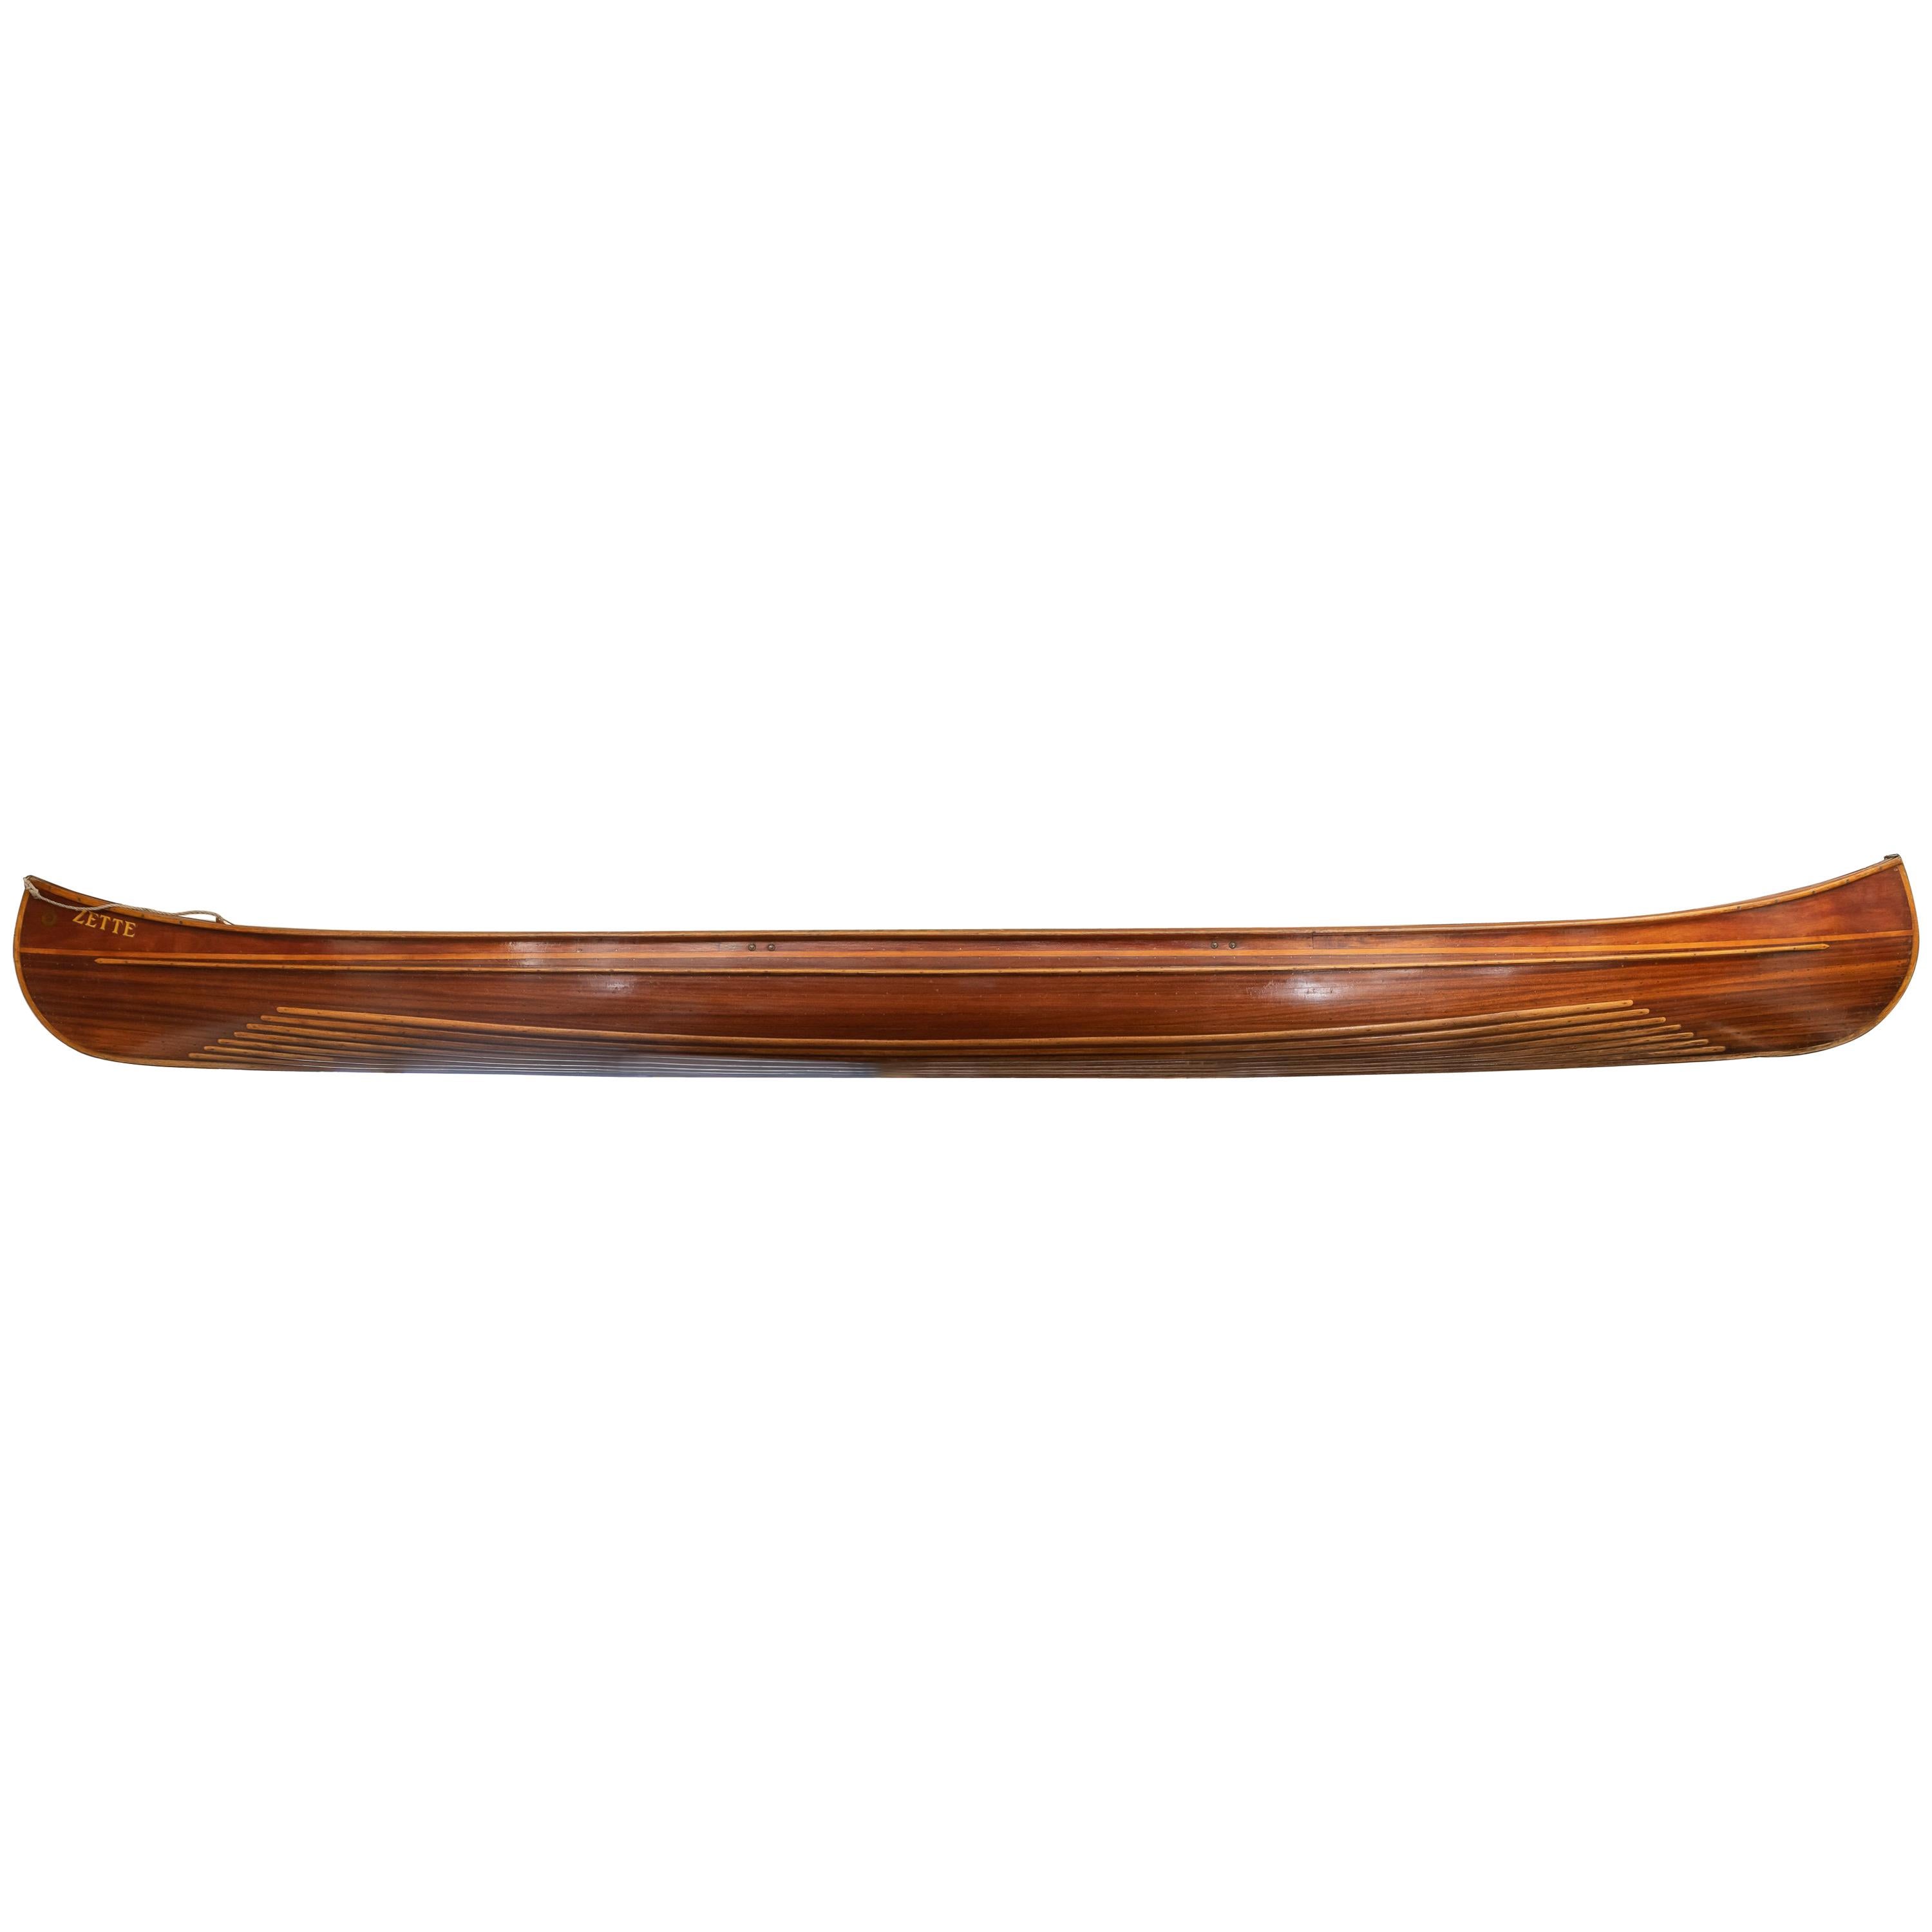 Fein gefertigte französische Holzkanus „Zette“ von Pierre Del Mez, Le Perreaux